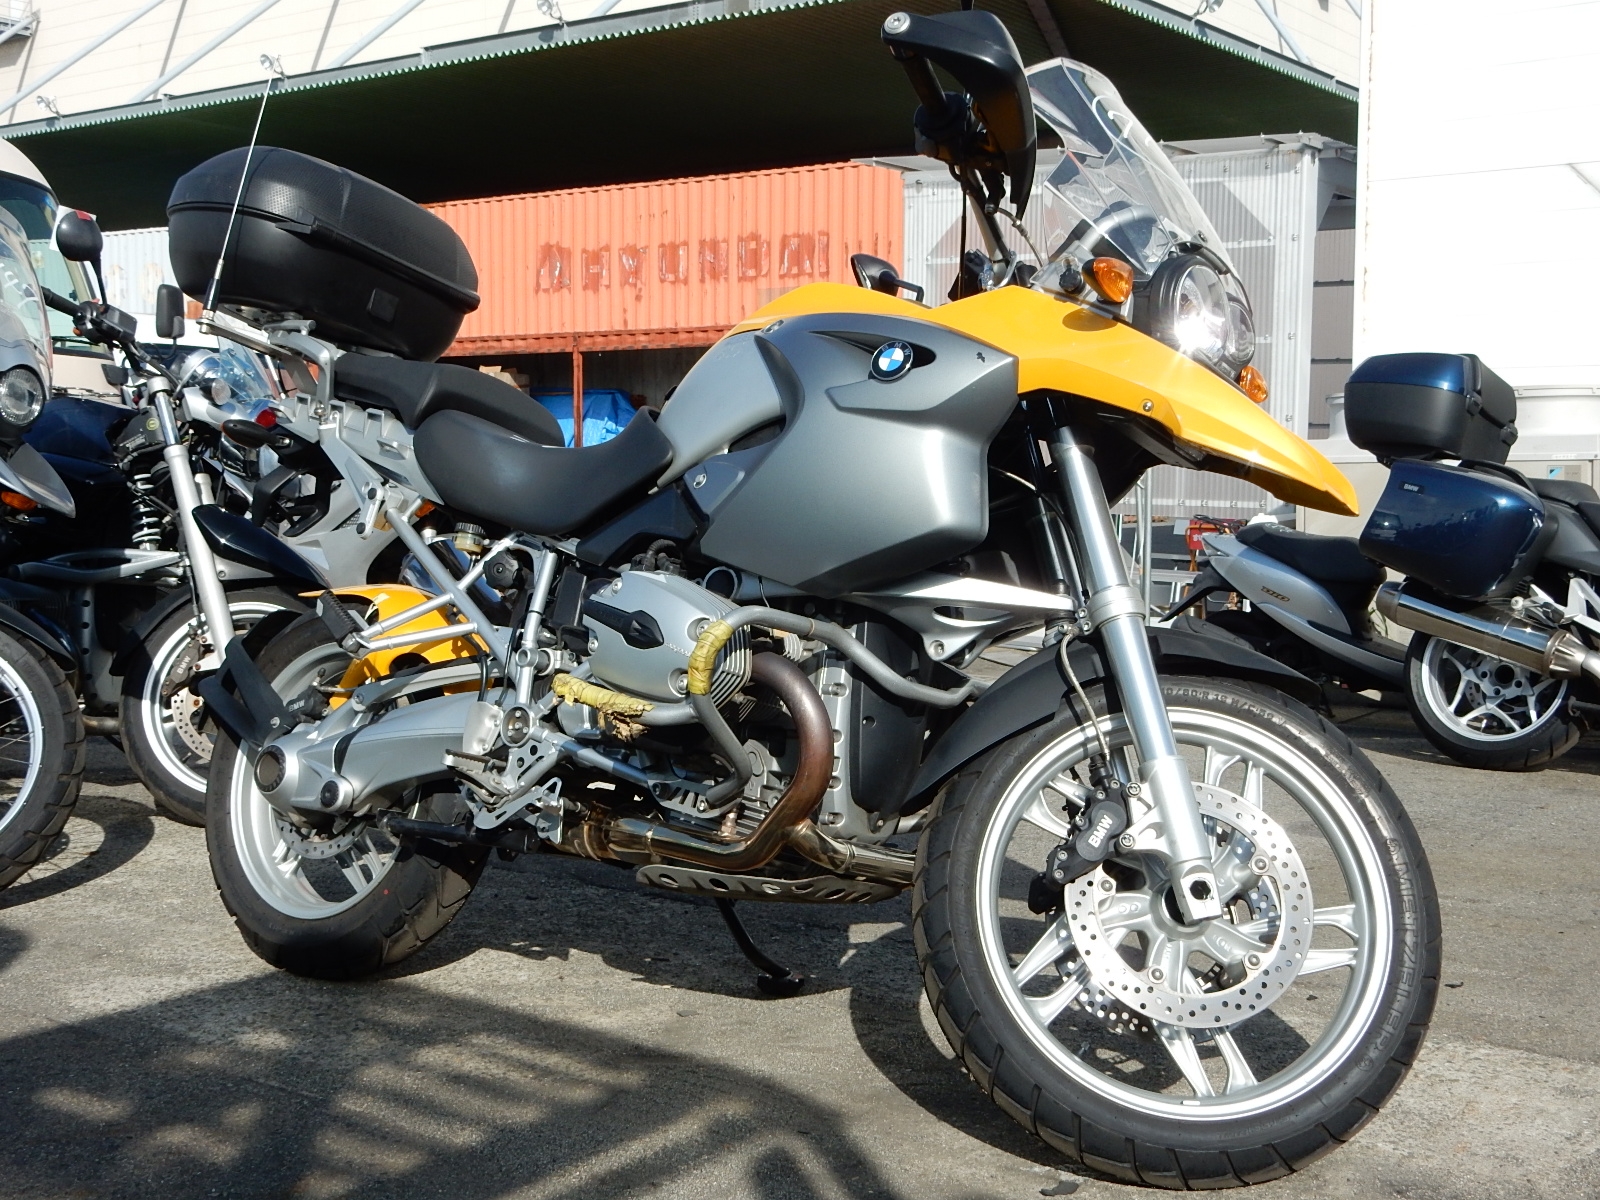 BMW GS 400. 1. R 1200 GS мотоцикла. Yamaha TDM И BMW gs1200. Мотоциклы БМВ бу.